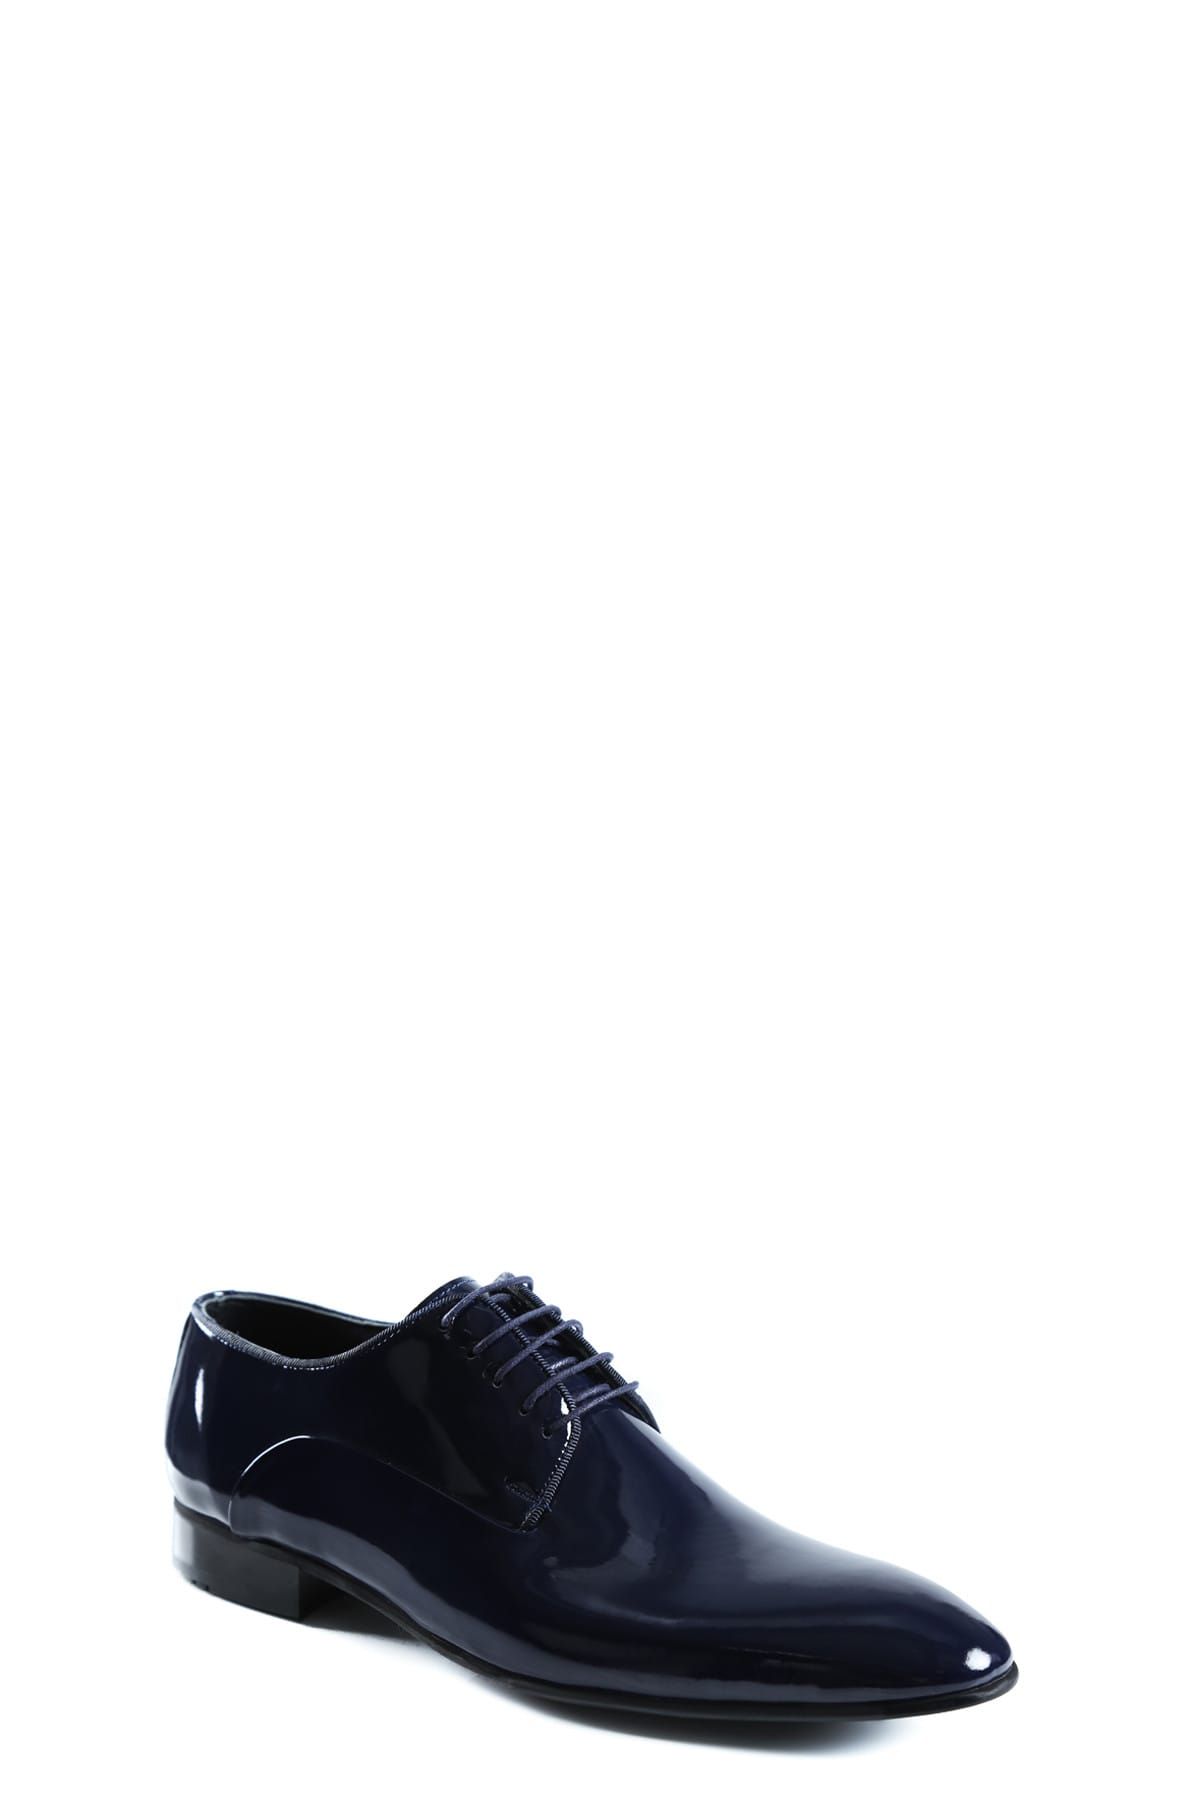 D'S Damat Lacivert Klasik Ayakkabı-6HSS90317908-101